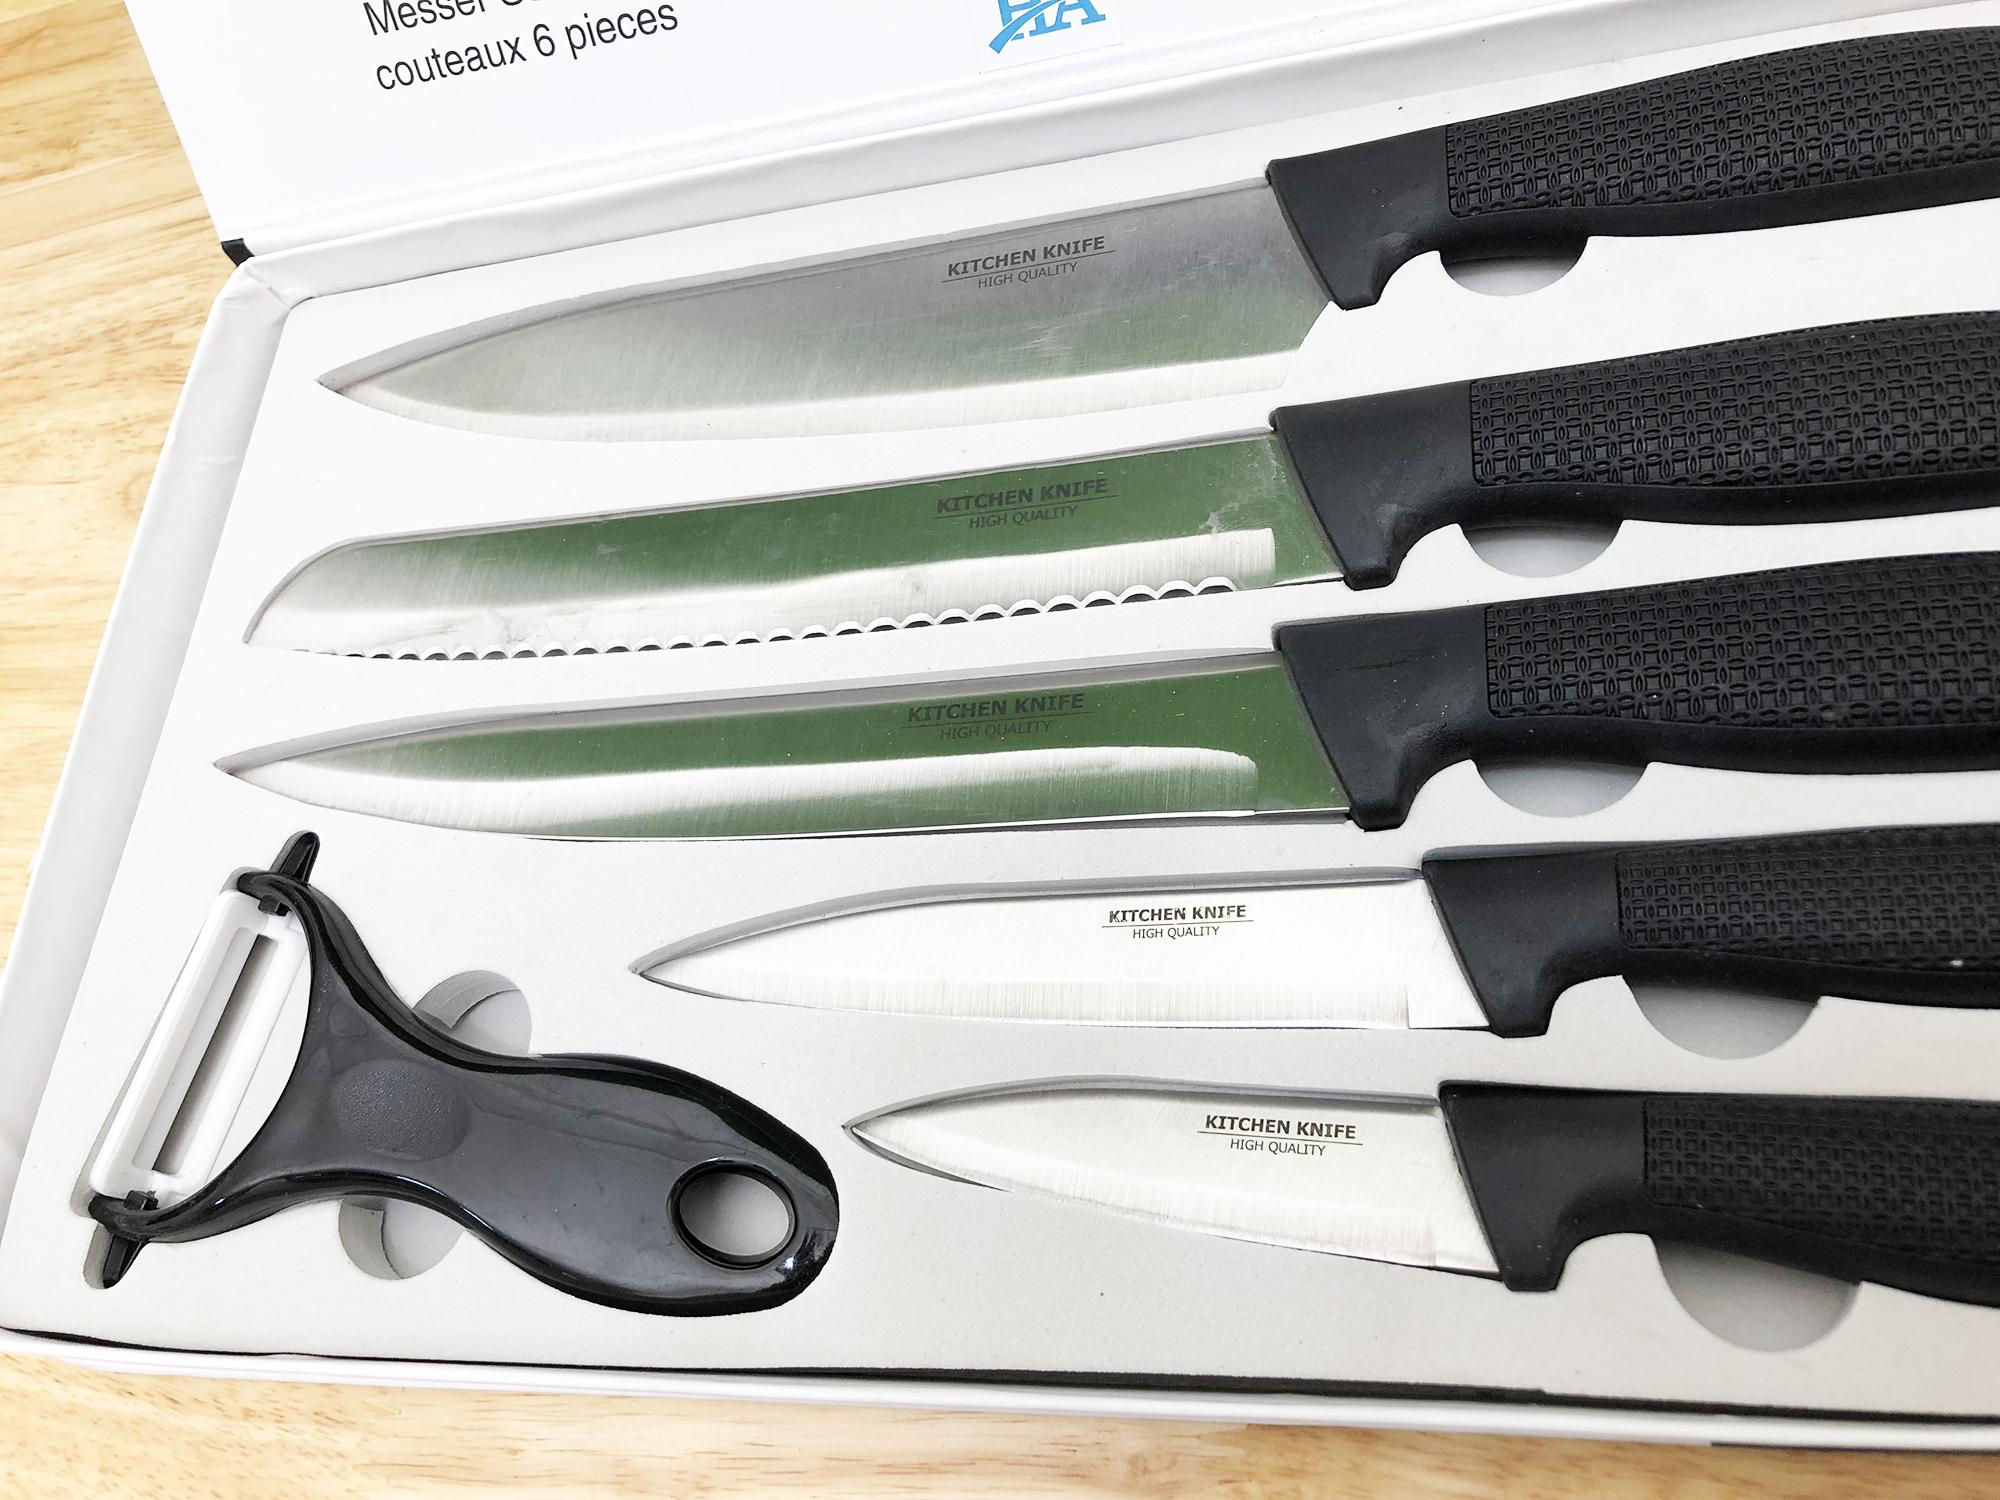 Bộ dao nhà bếp 6 món: 5 dao và 1 dụng cụ gọt vỏ trái cây GDSUNG14